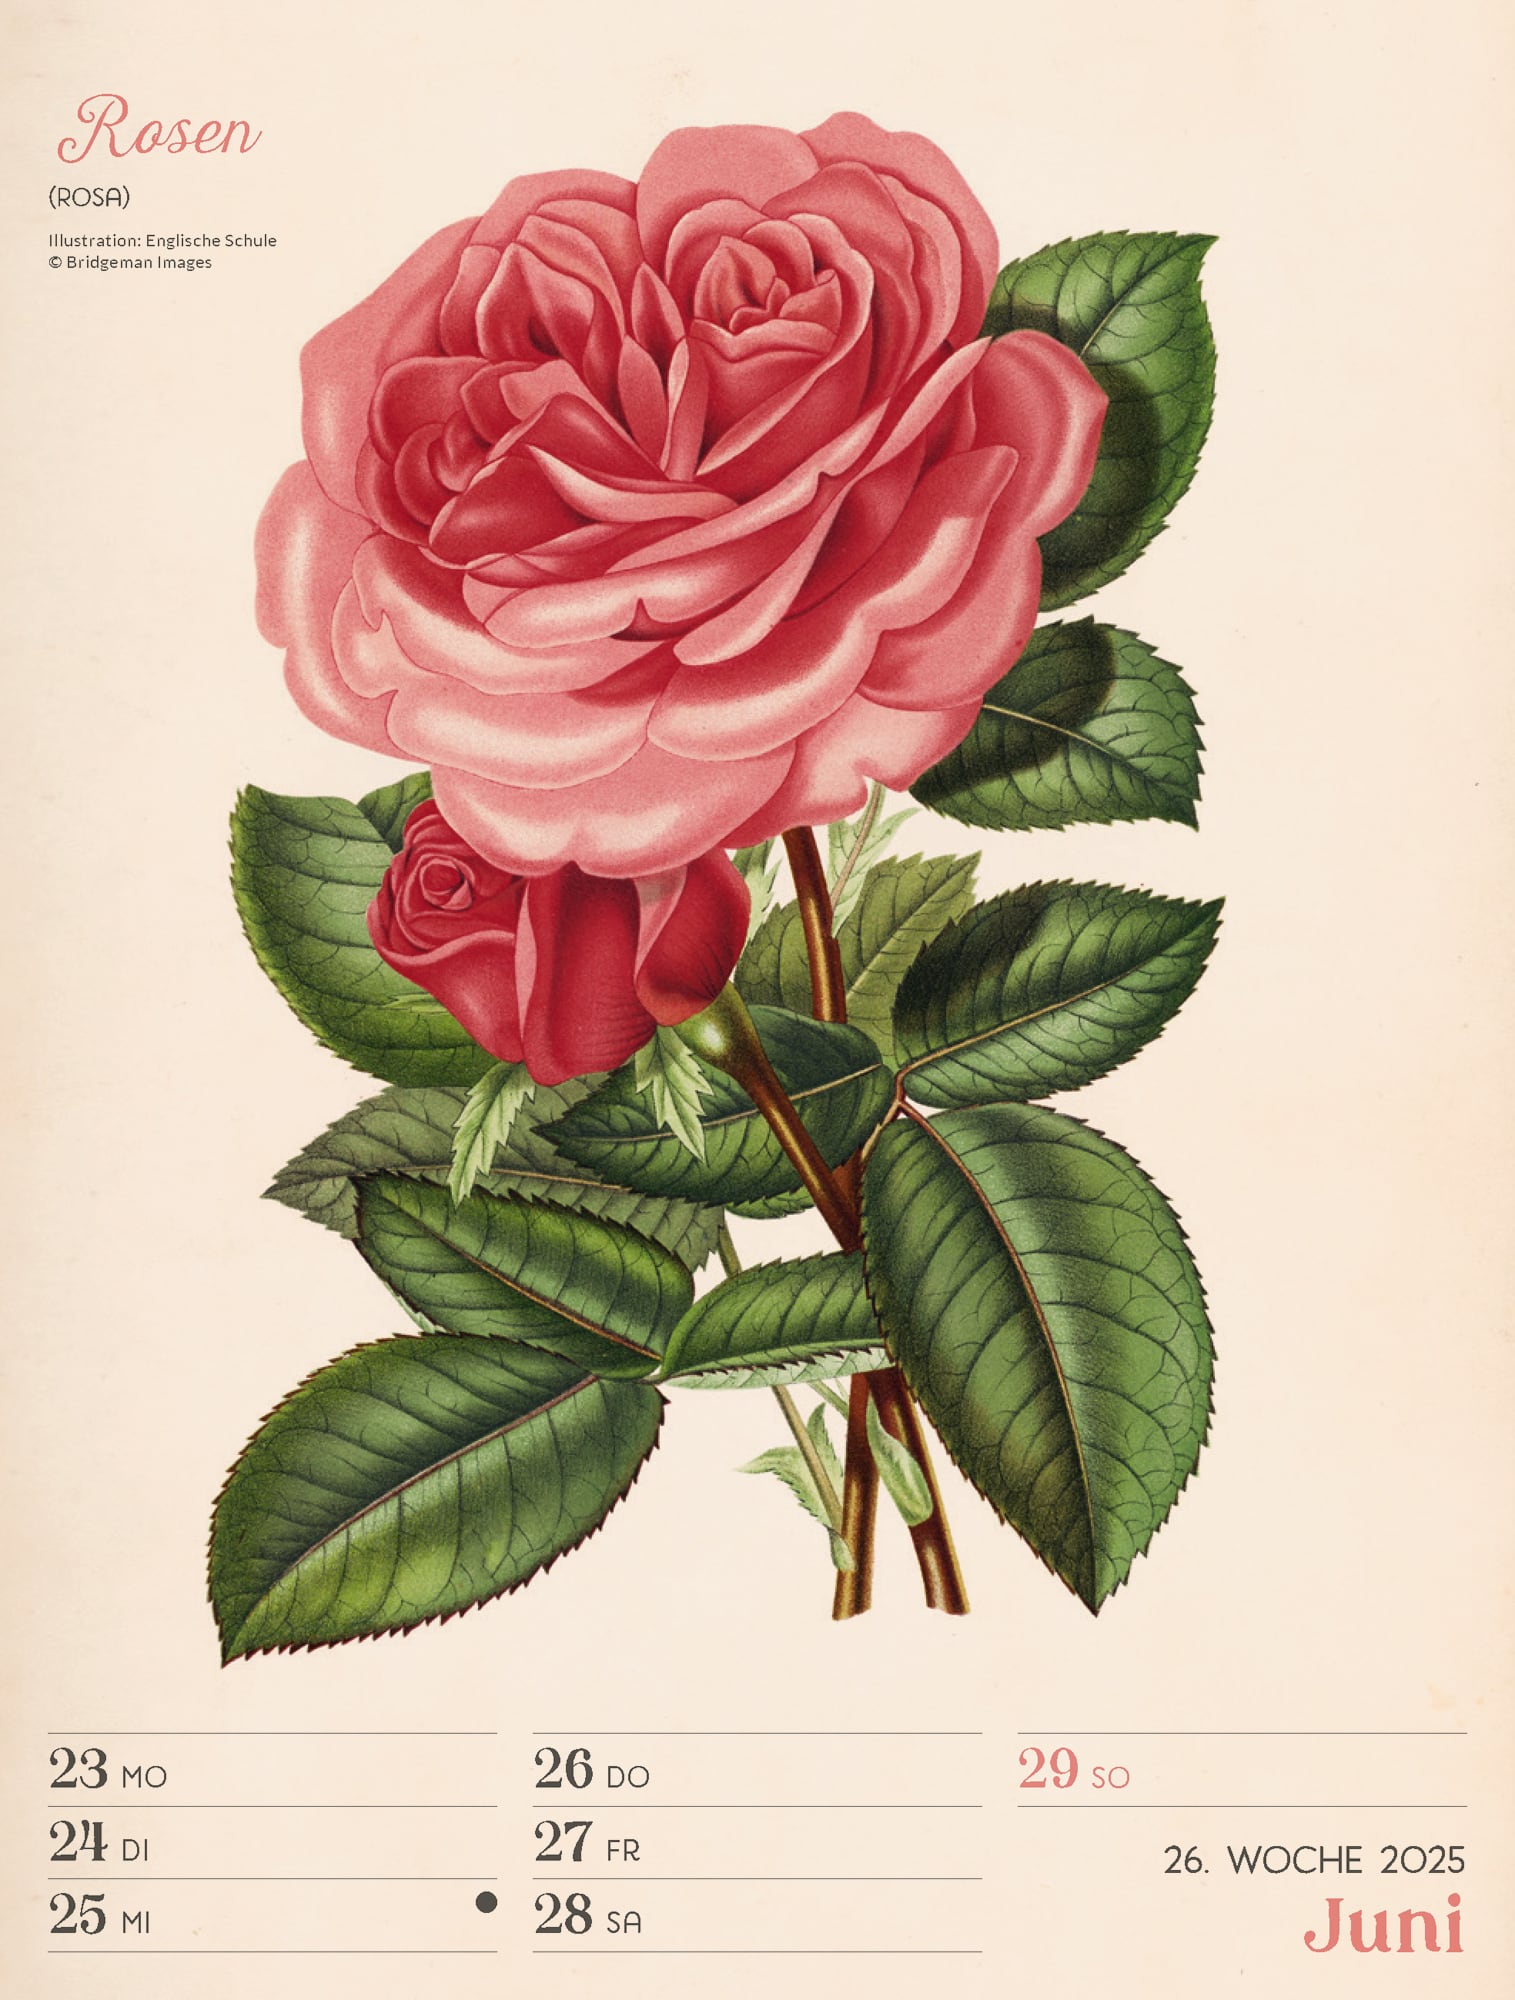 Ackermann Calendar Ars Floralis 2025 - Weekly Planner - Inside View 29